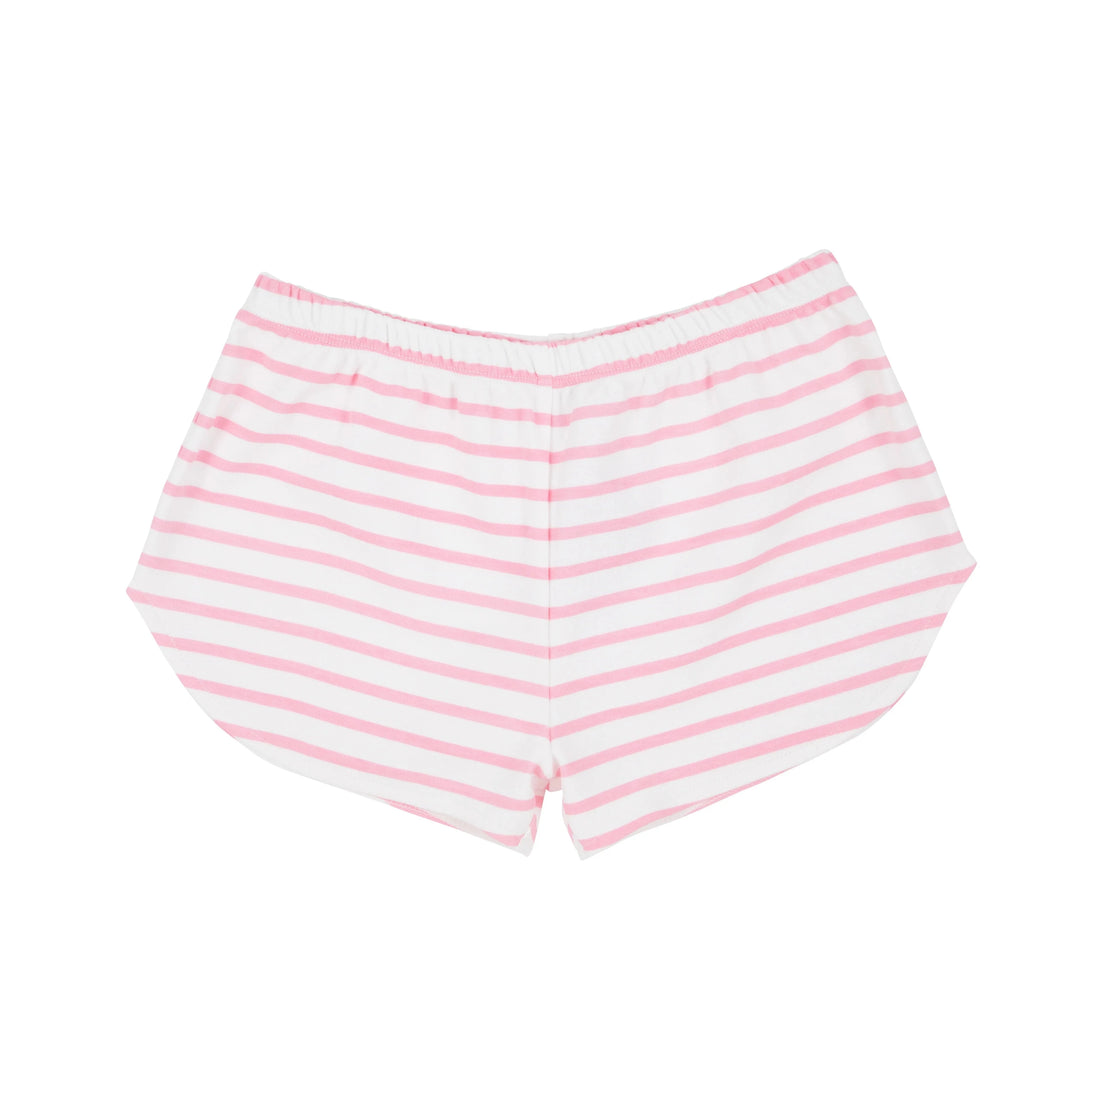 Beaufort Bonnet Cheryl Shorts- Hamptons Hot Pink Stripe